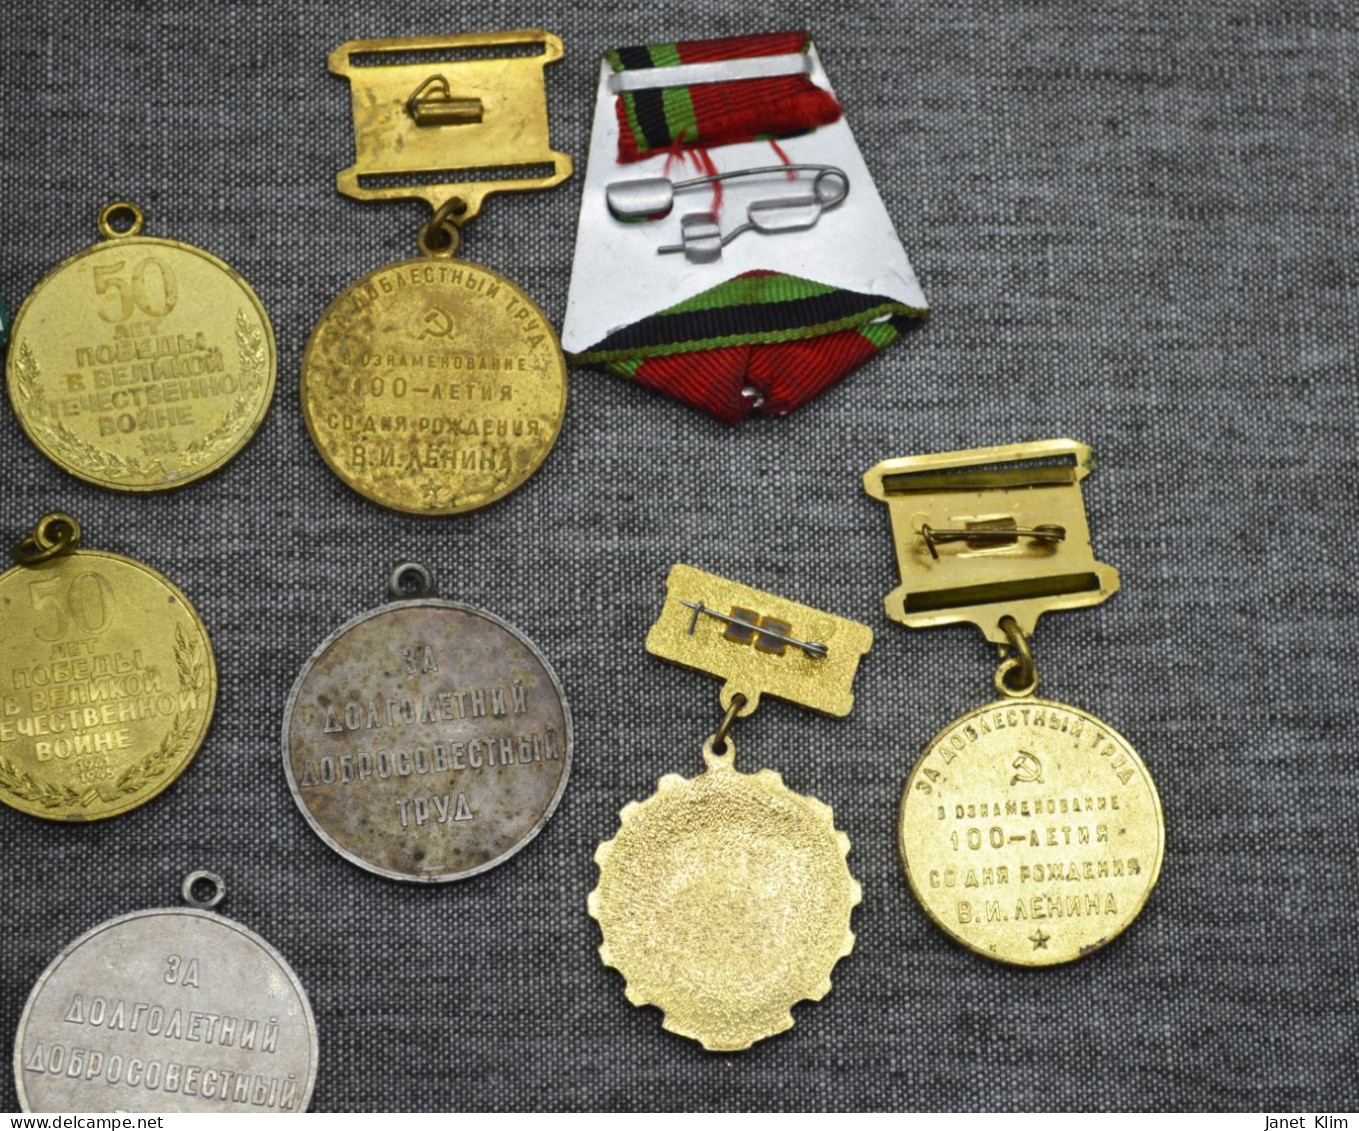 Vintage Lot ussr medals